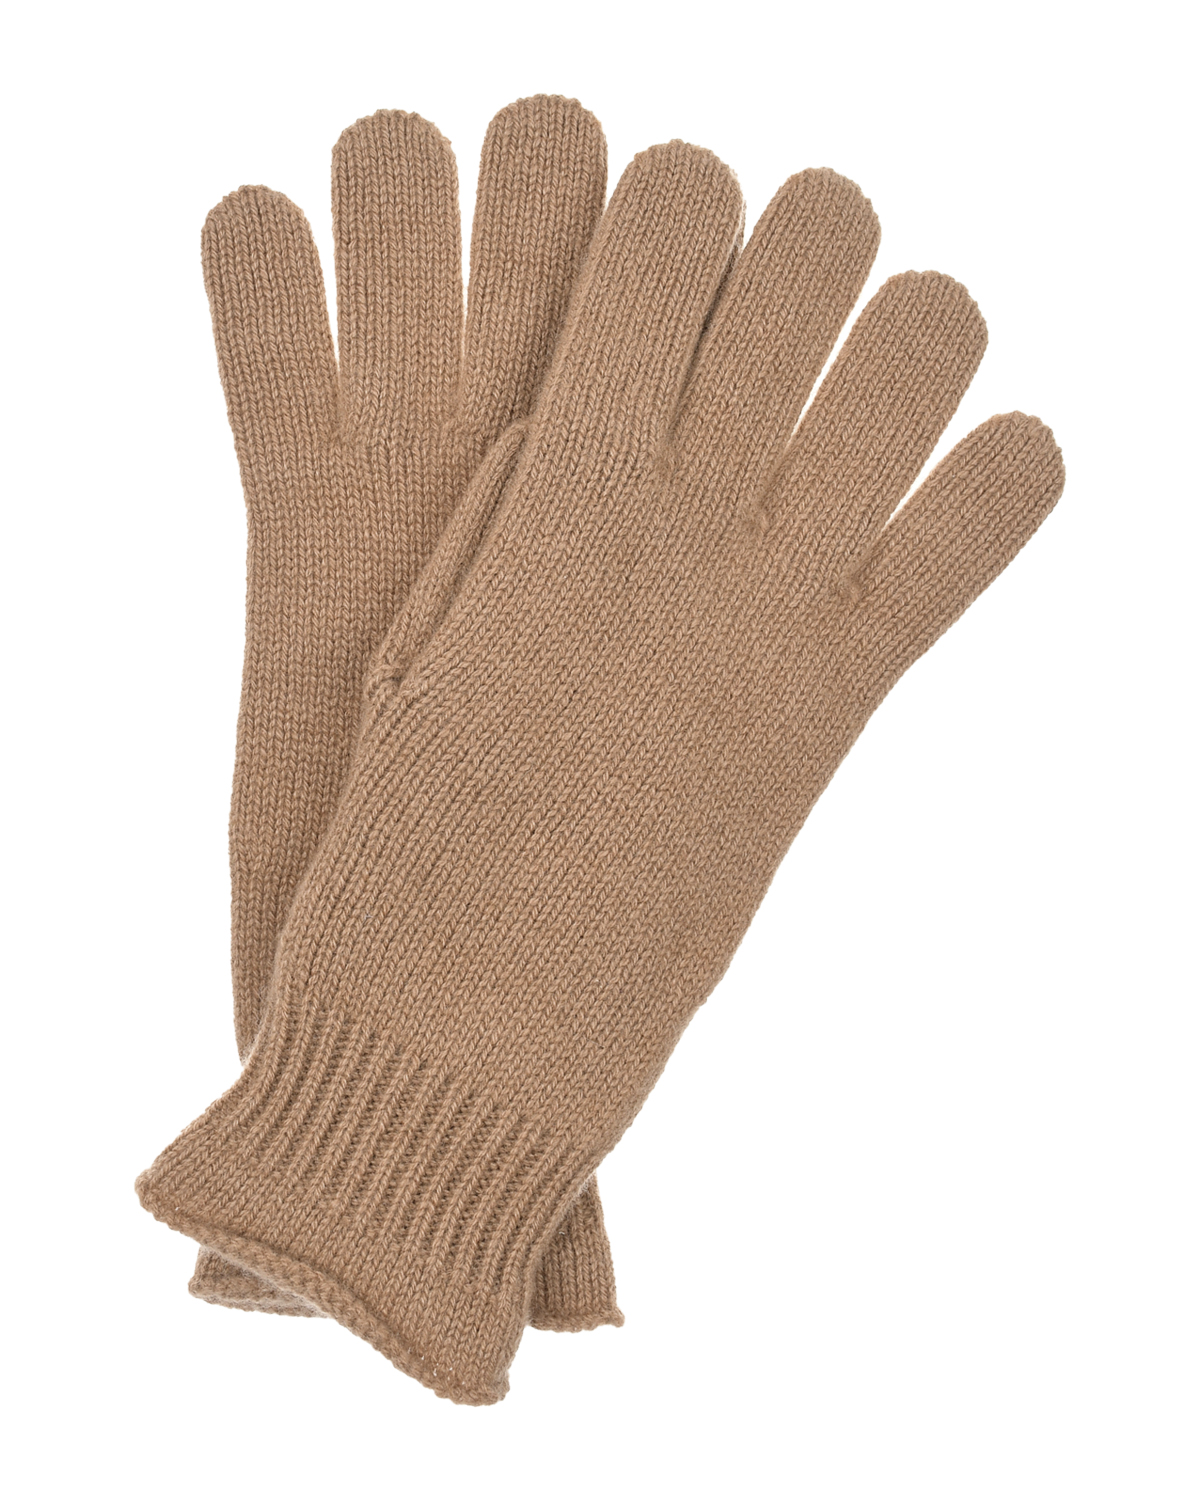 Коричневые кашемировые перчатки Panicale, размер unica, цвет коричневый